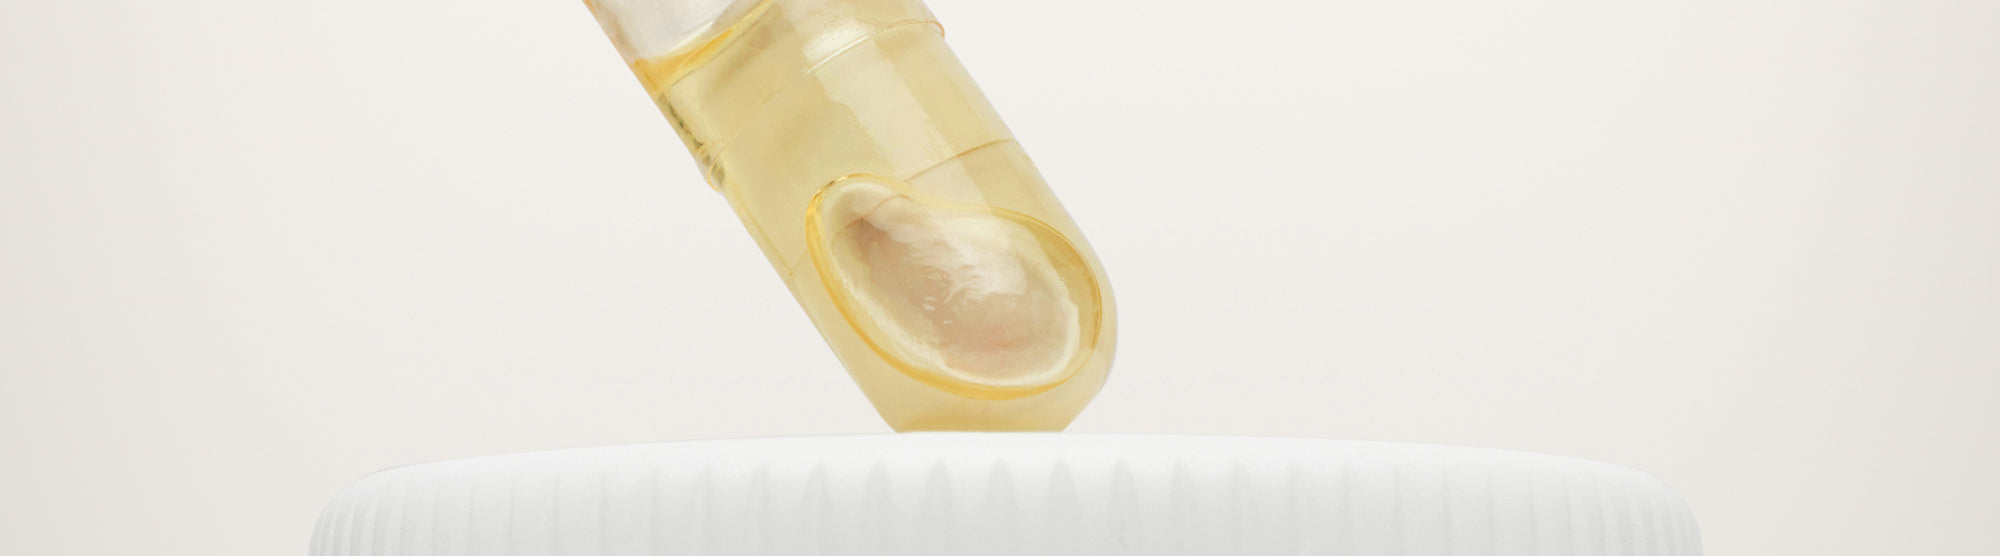 Close up of Premama®'s Prenatal Vitamin